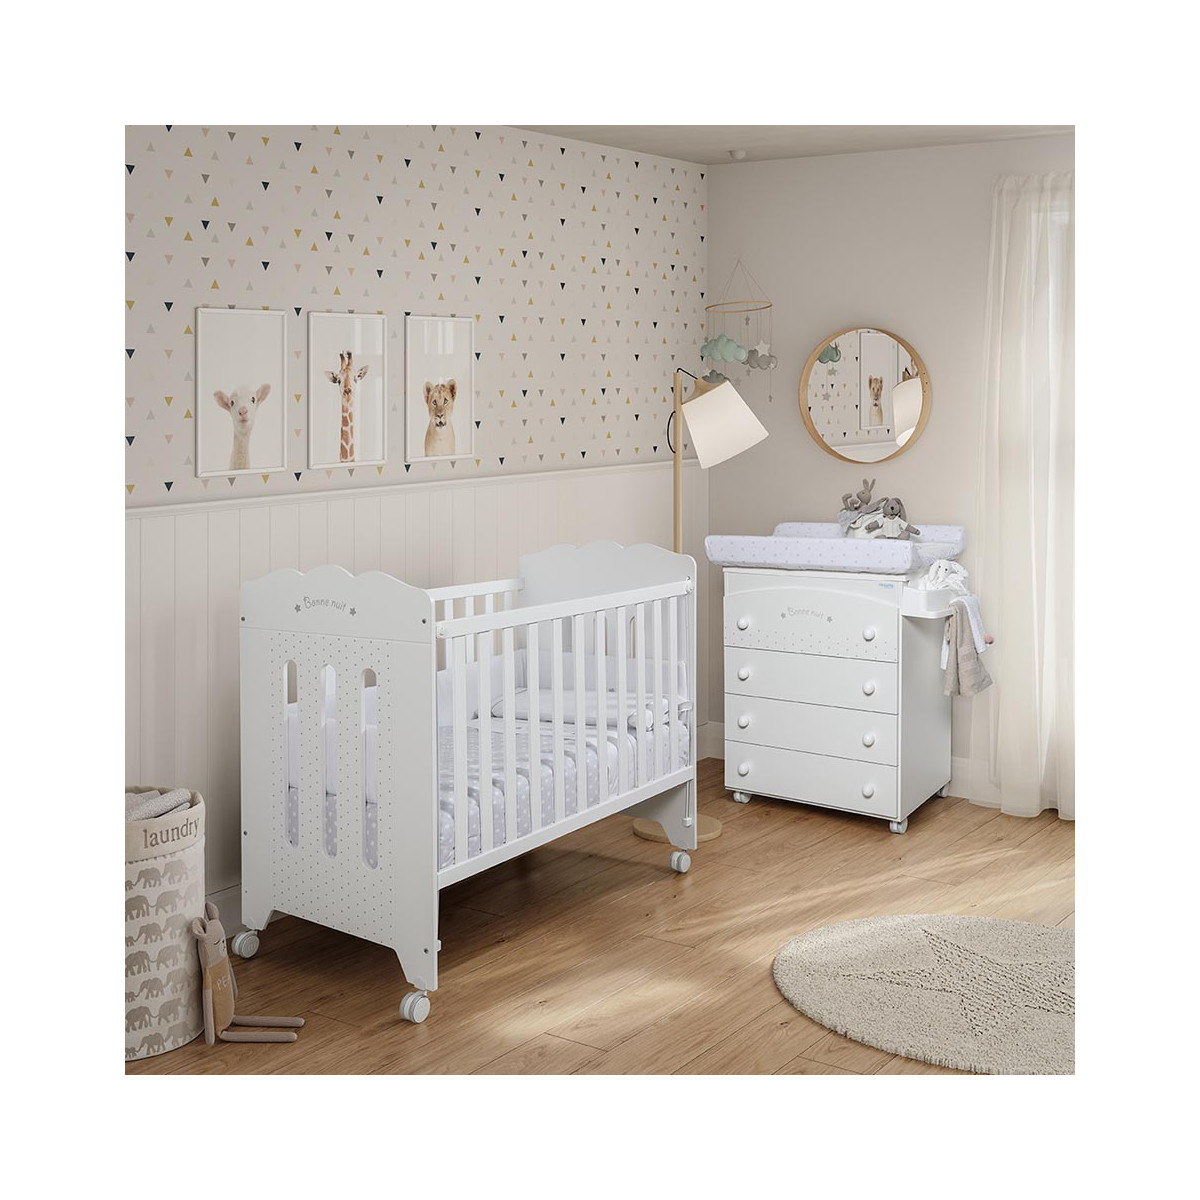 La cuna Bonne Nuit 120 x 60 de Micuna tiene formas delicadas y romántica, imagínala en la habitación de tu bebé.